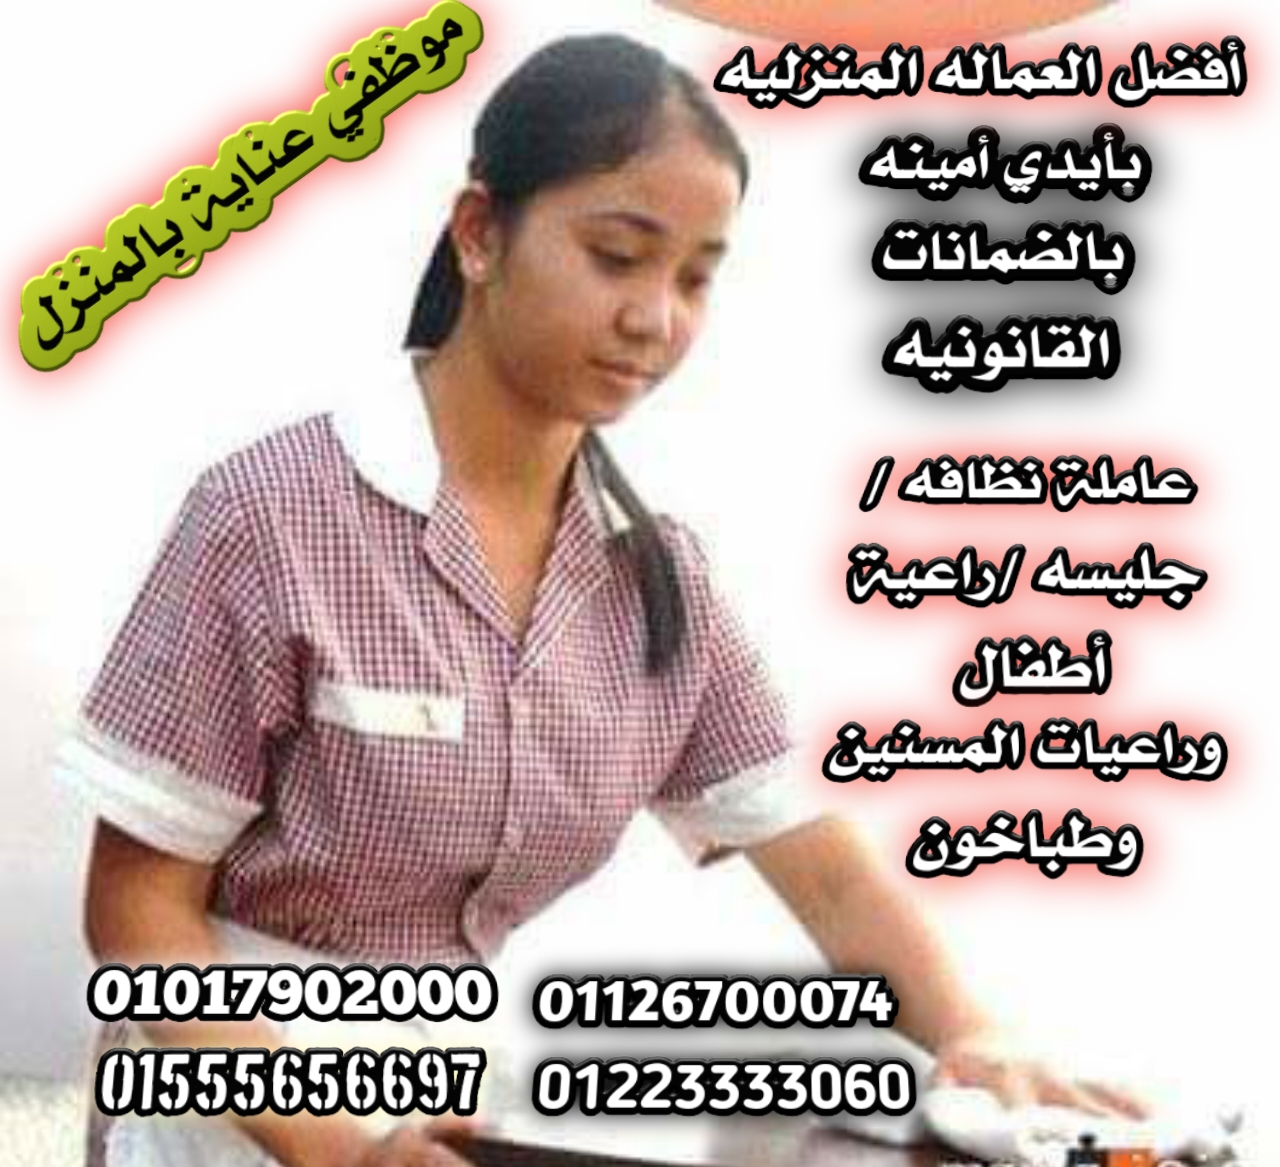 نوفر مربيات الأطفال وجليسات المسنين وجميع انواع الخدم و الشغالات مصريات واجانب 01223333060